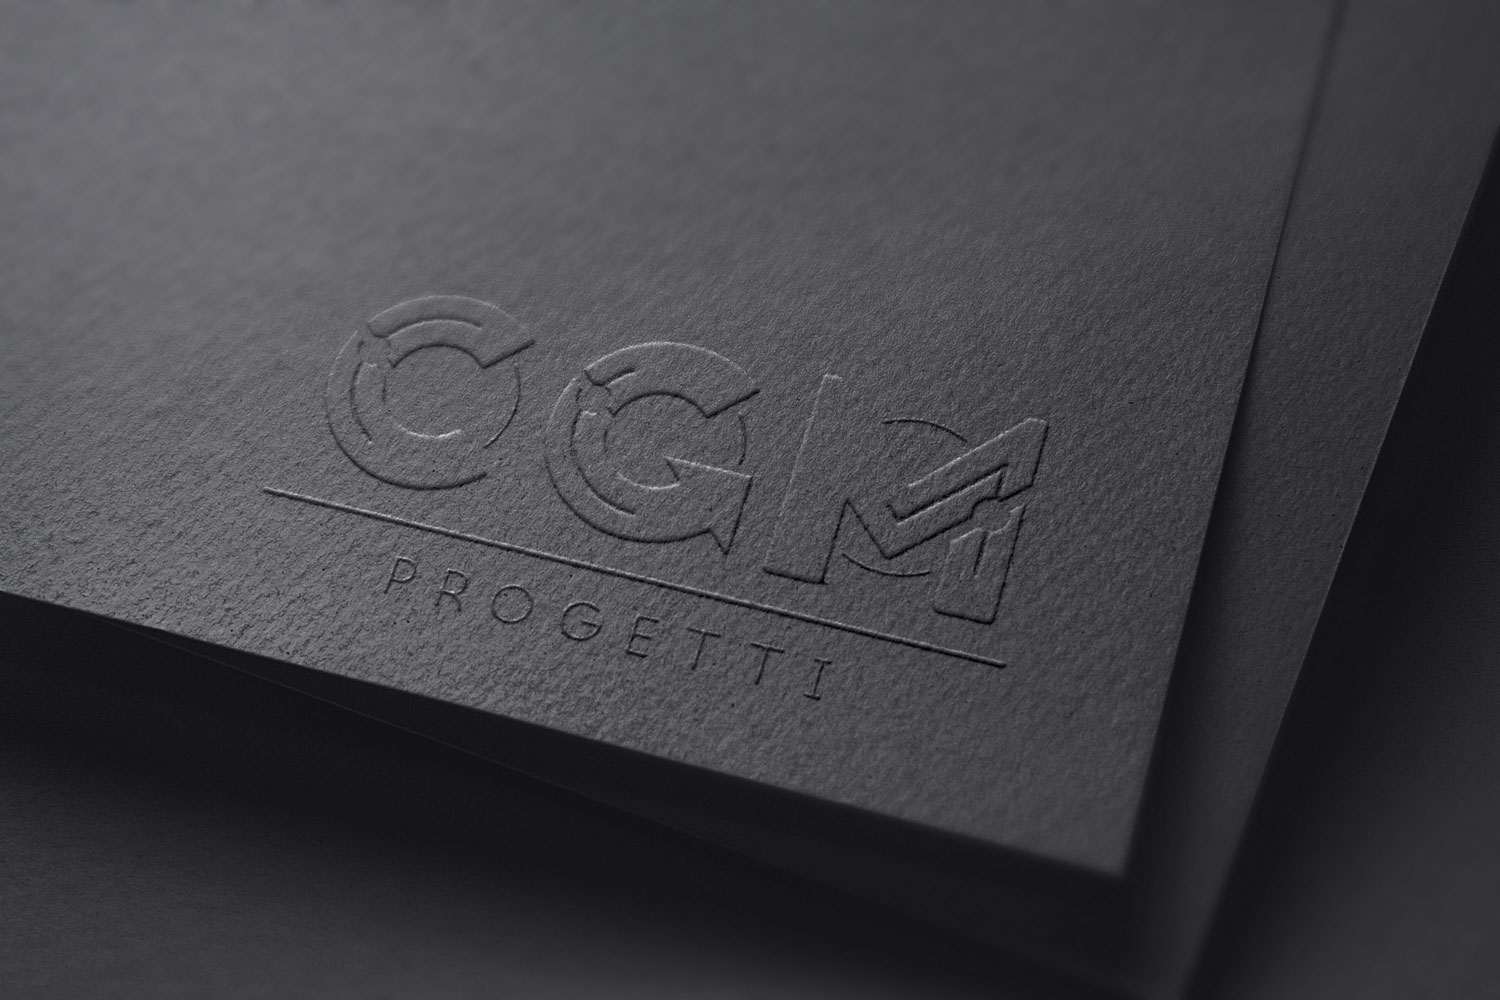 Logo e brand identity di CGM Progetti realizzato da SEBA! grafico di Gravellona Toce nel VCO del marchio pressato su cartoncino nero